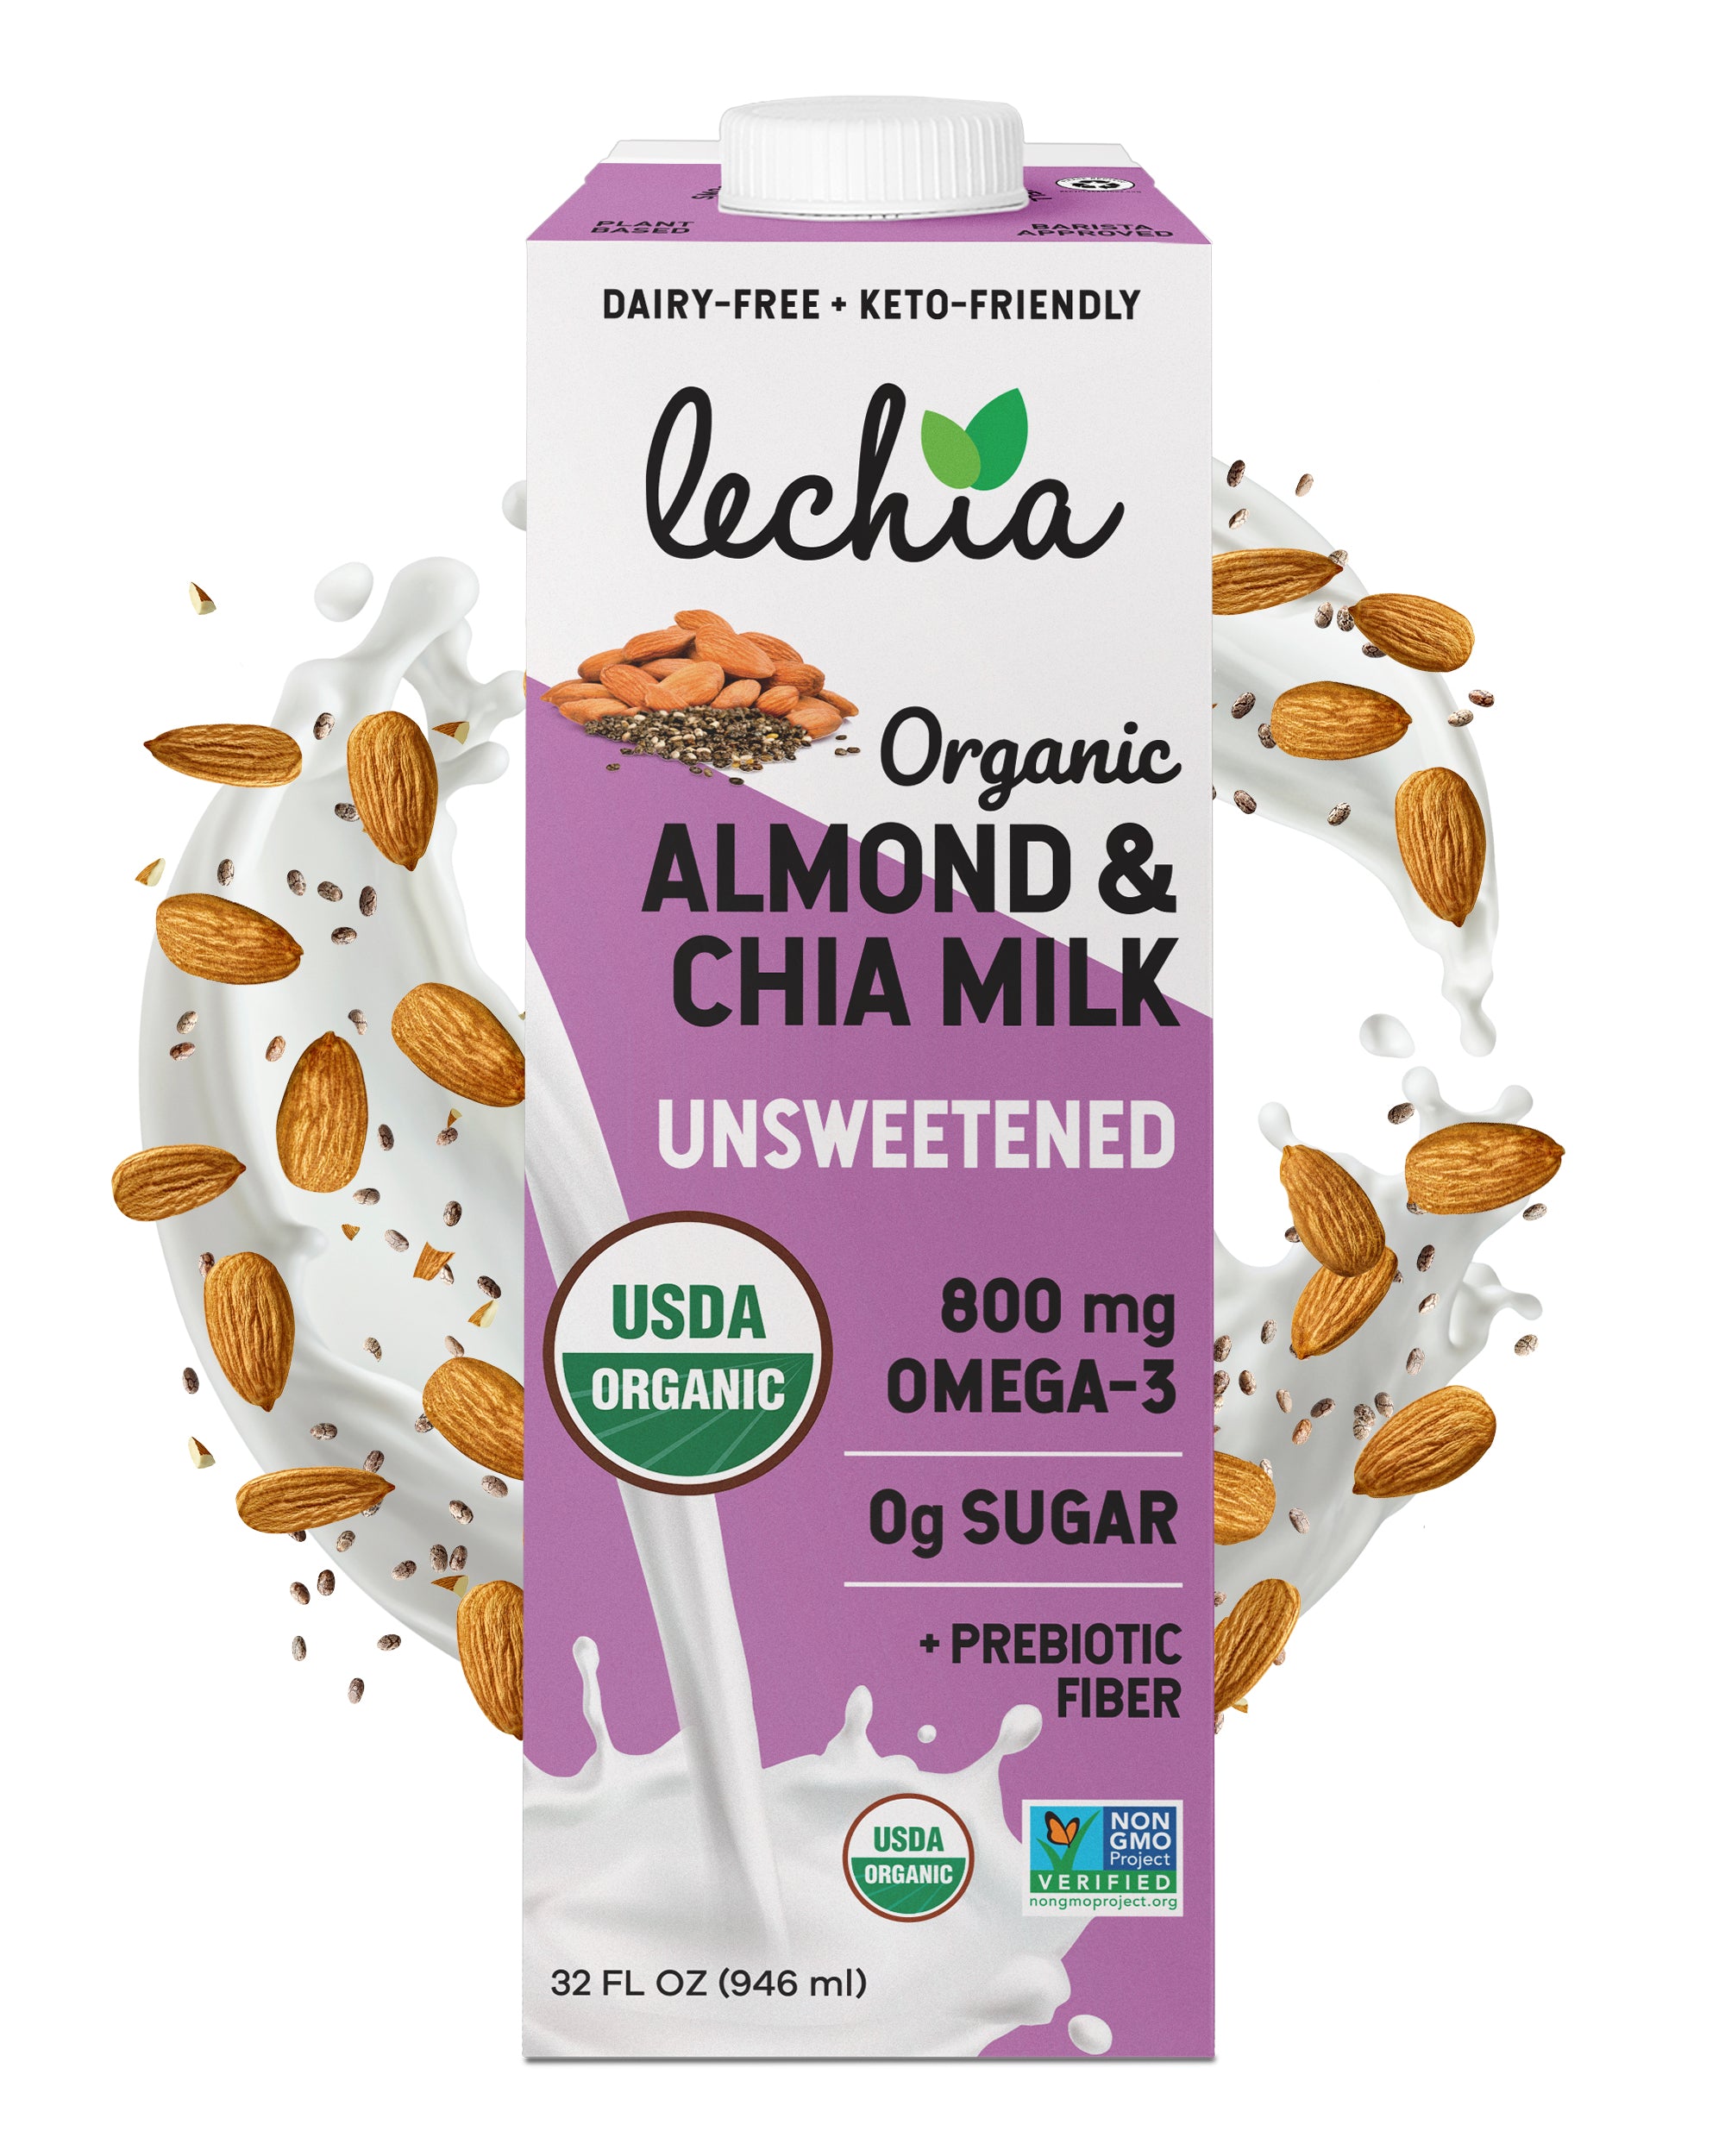 Almond & Chia Milk